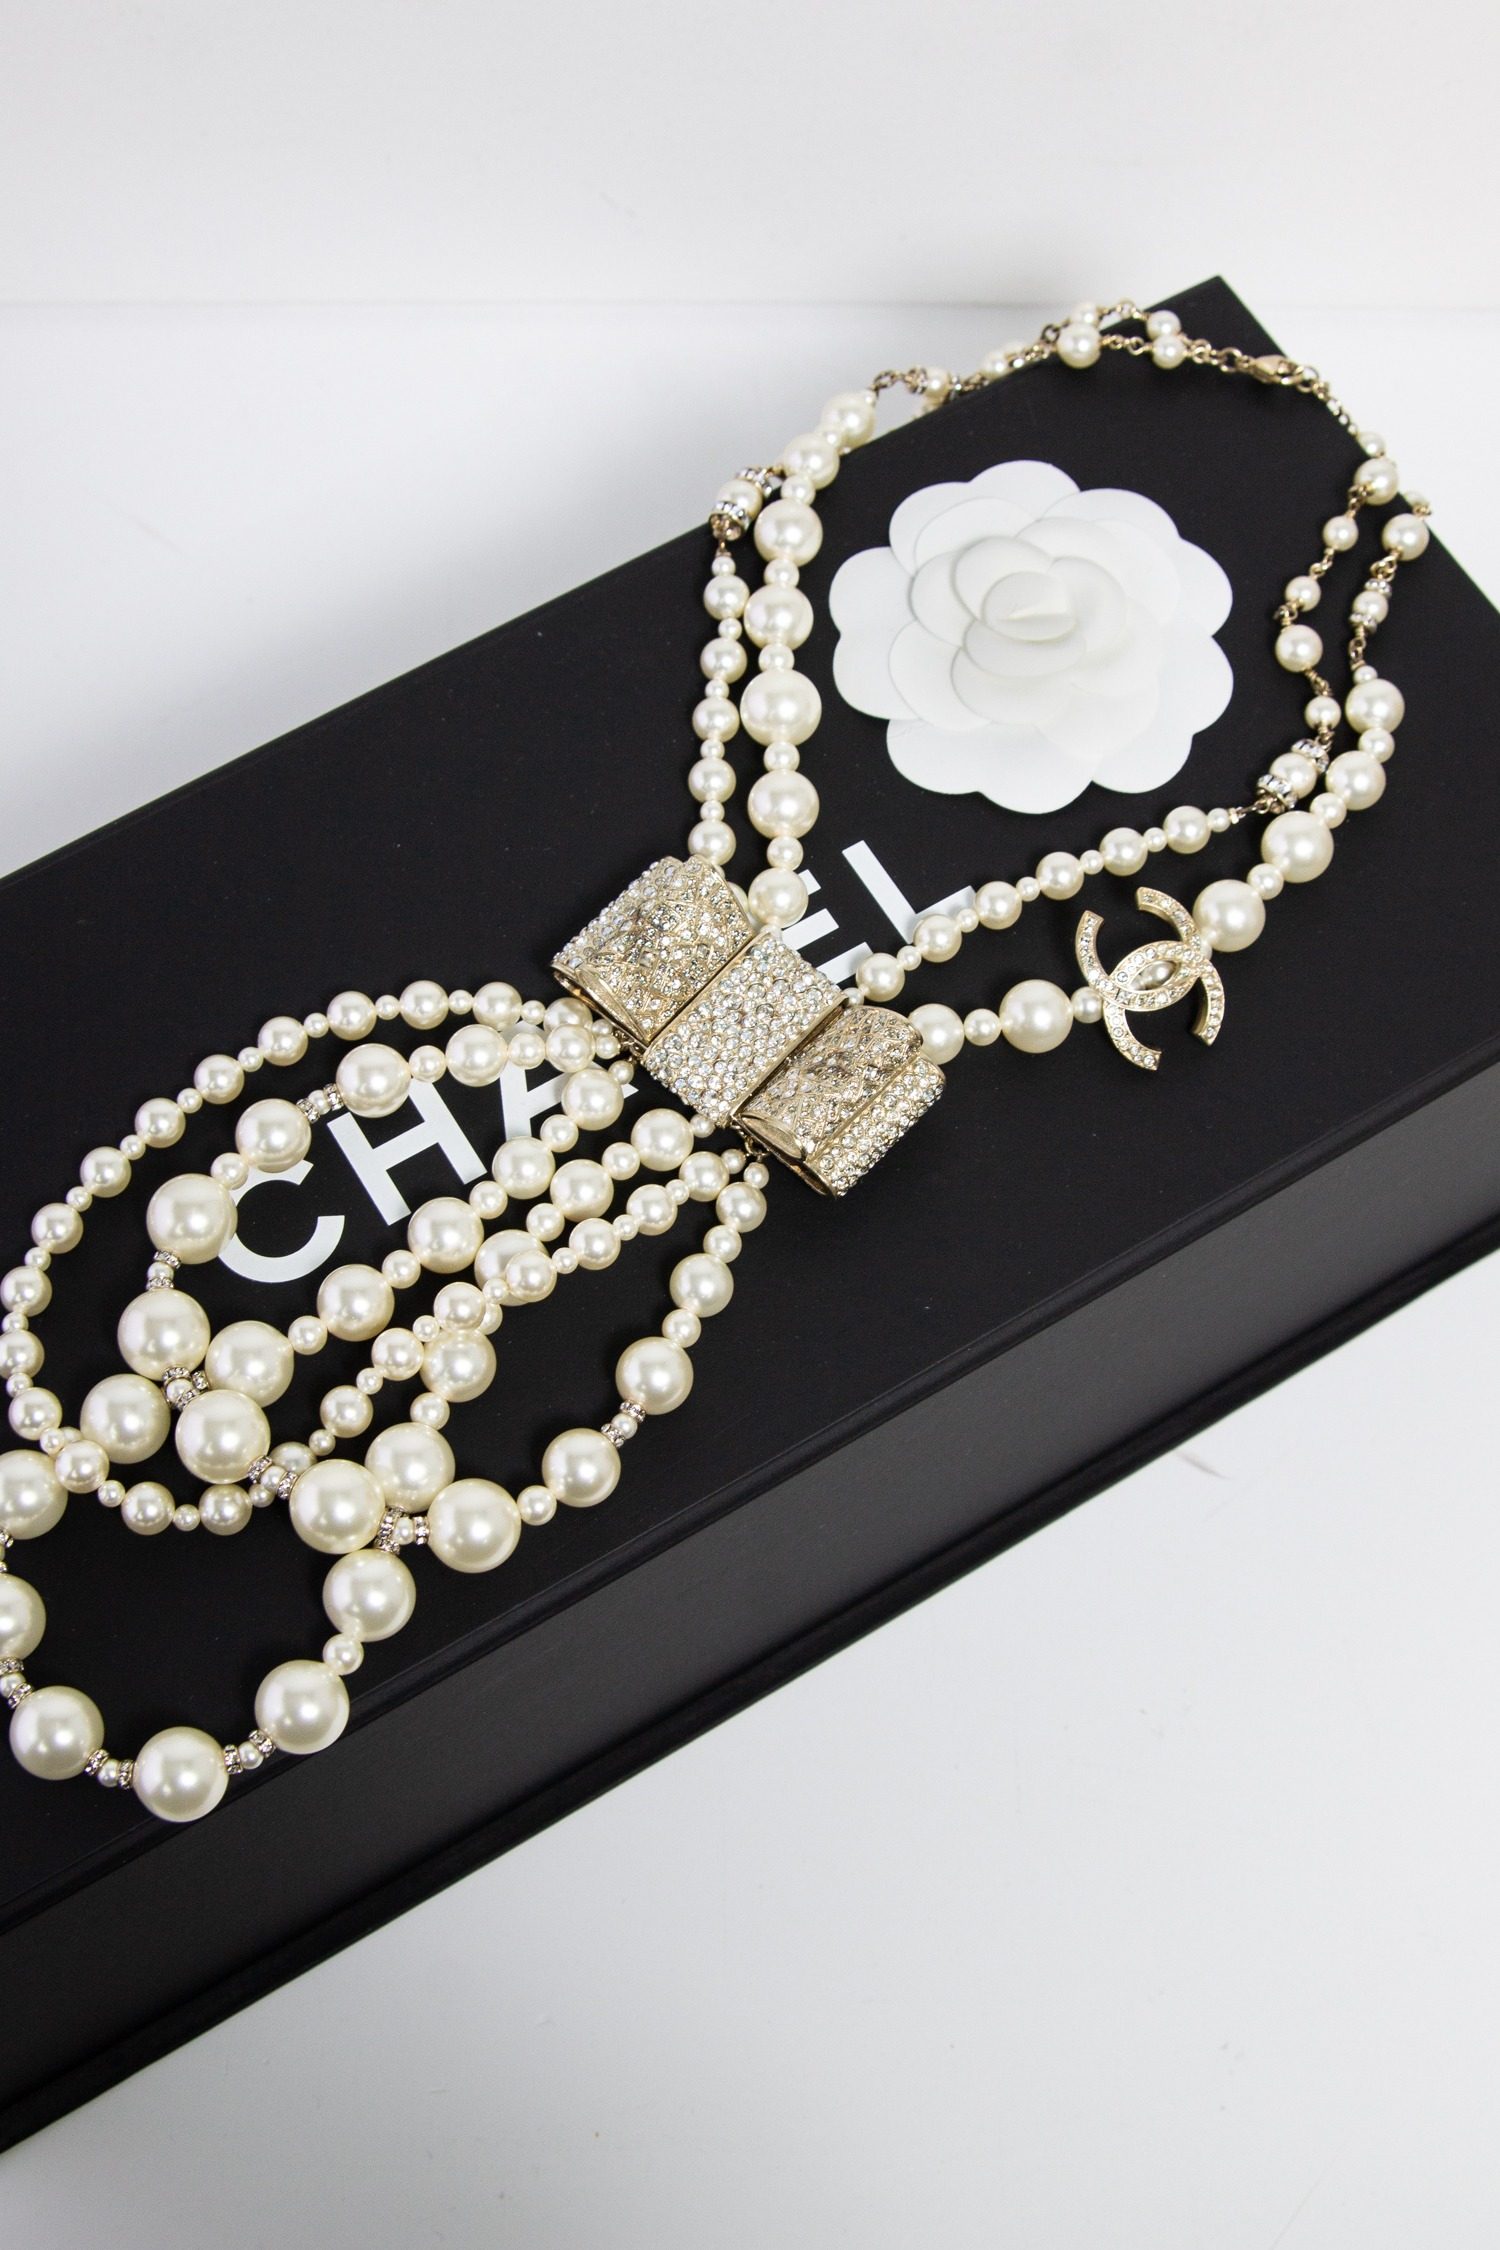 Chanel mehrreihige Perlenhalskette mit Strass Schleife